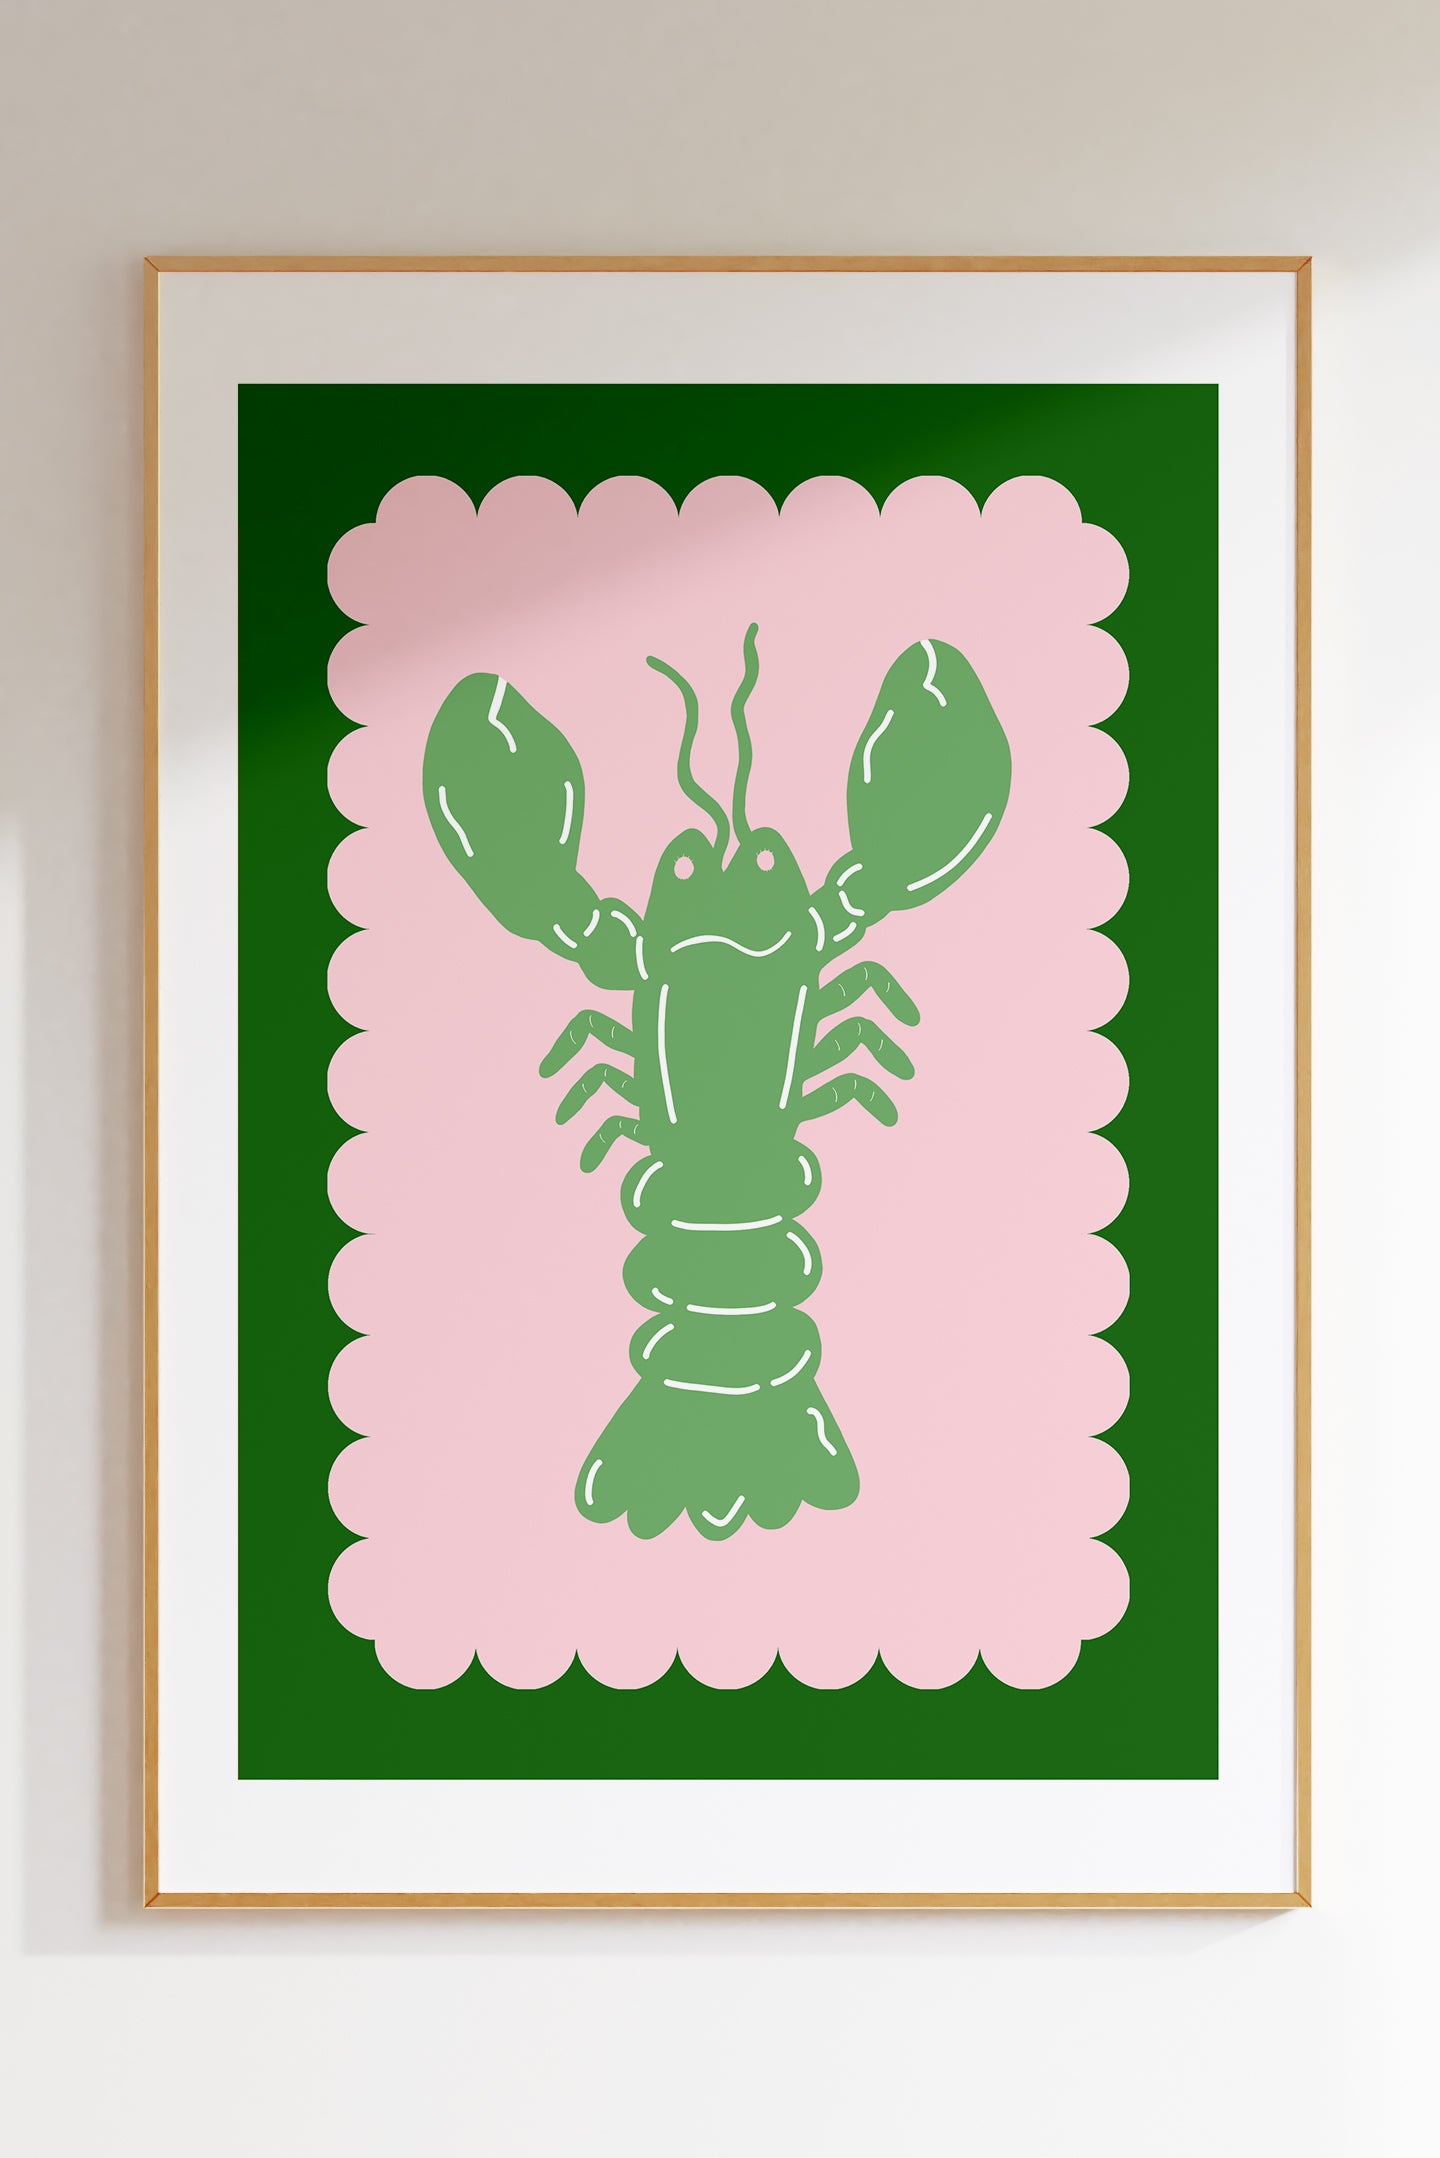 Lobster Scallop (More – Maddison Creative